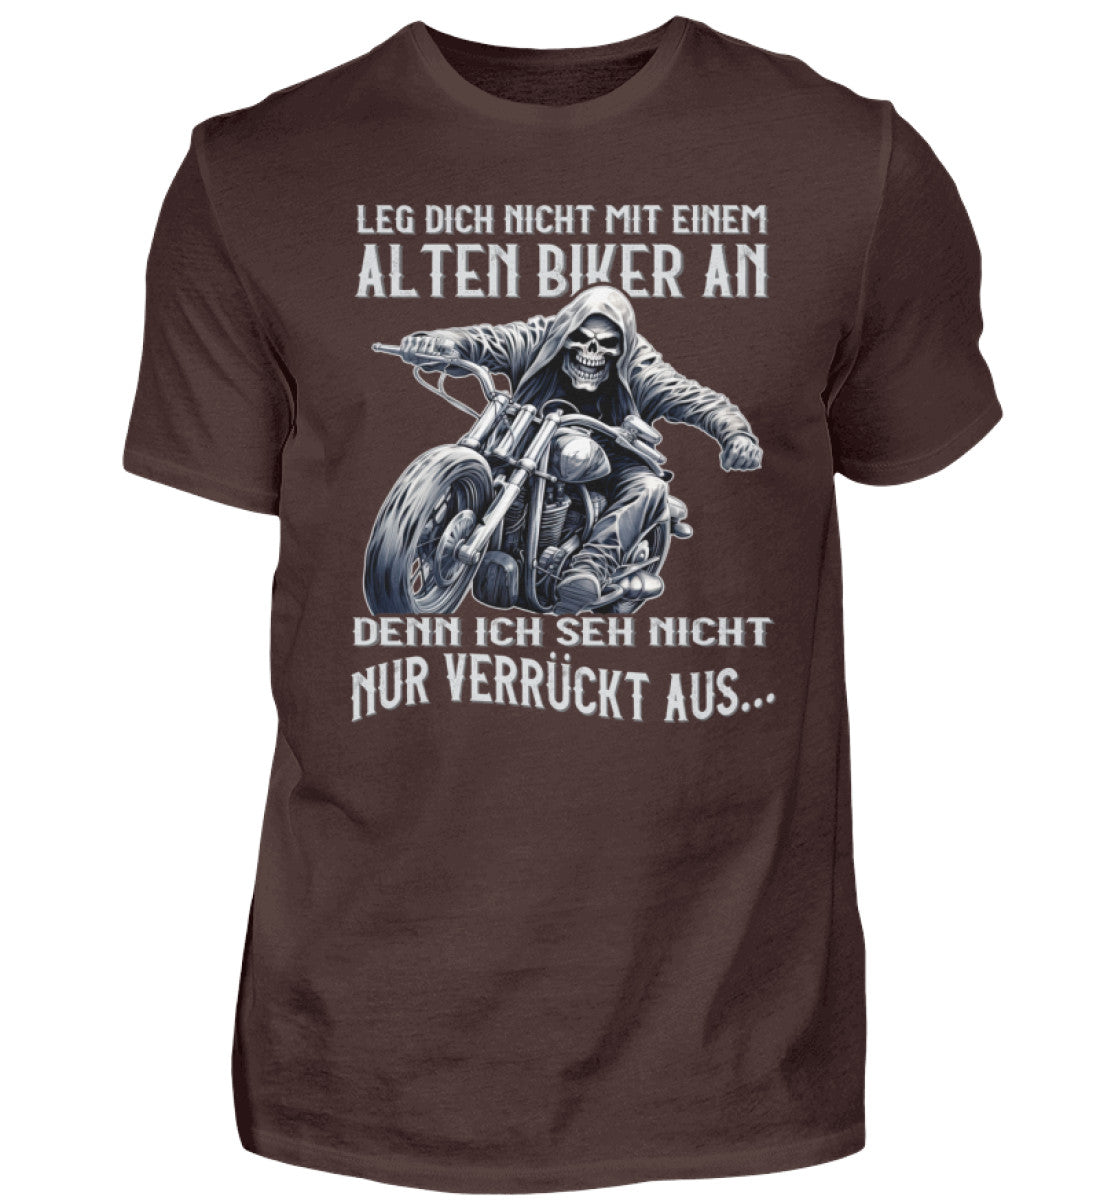 Ein Biker T-Shirt für Motorradfahrer von Wingbikers mit dem Aufdruck, Leg dich nicht mit einem alten Biker an, denn ich seh nicht nur verrückt aus - in braun.